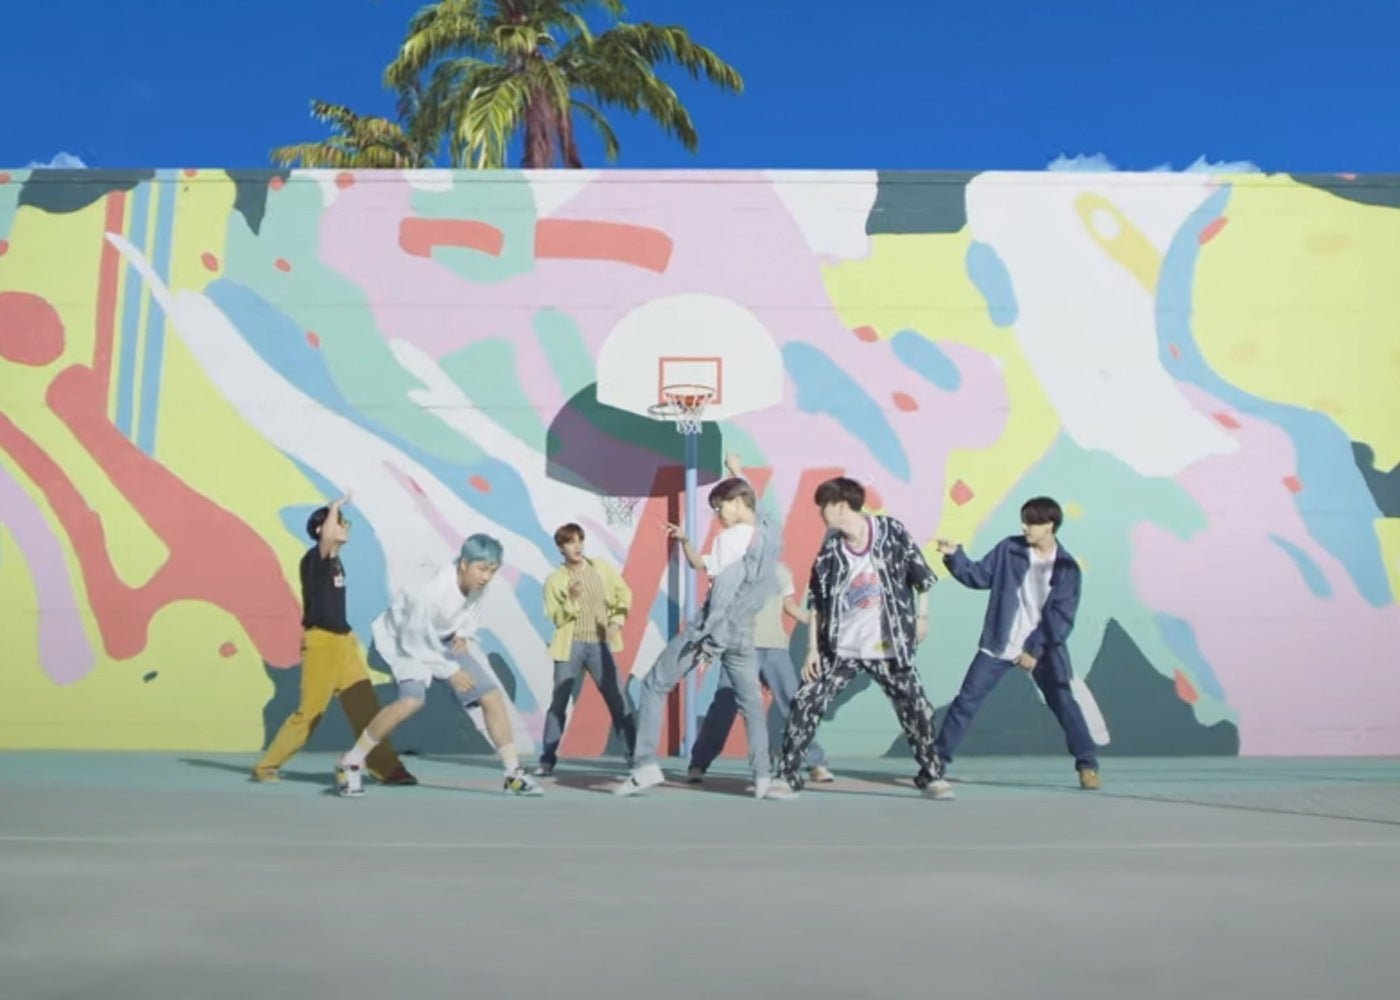 El K-Pop desembarca en Fortnite: BTS aparecerá en el juego